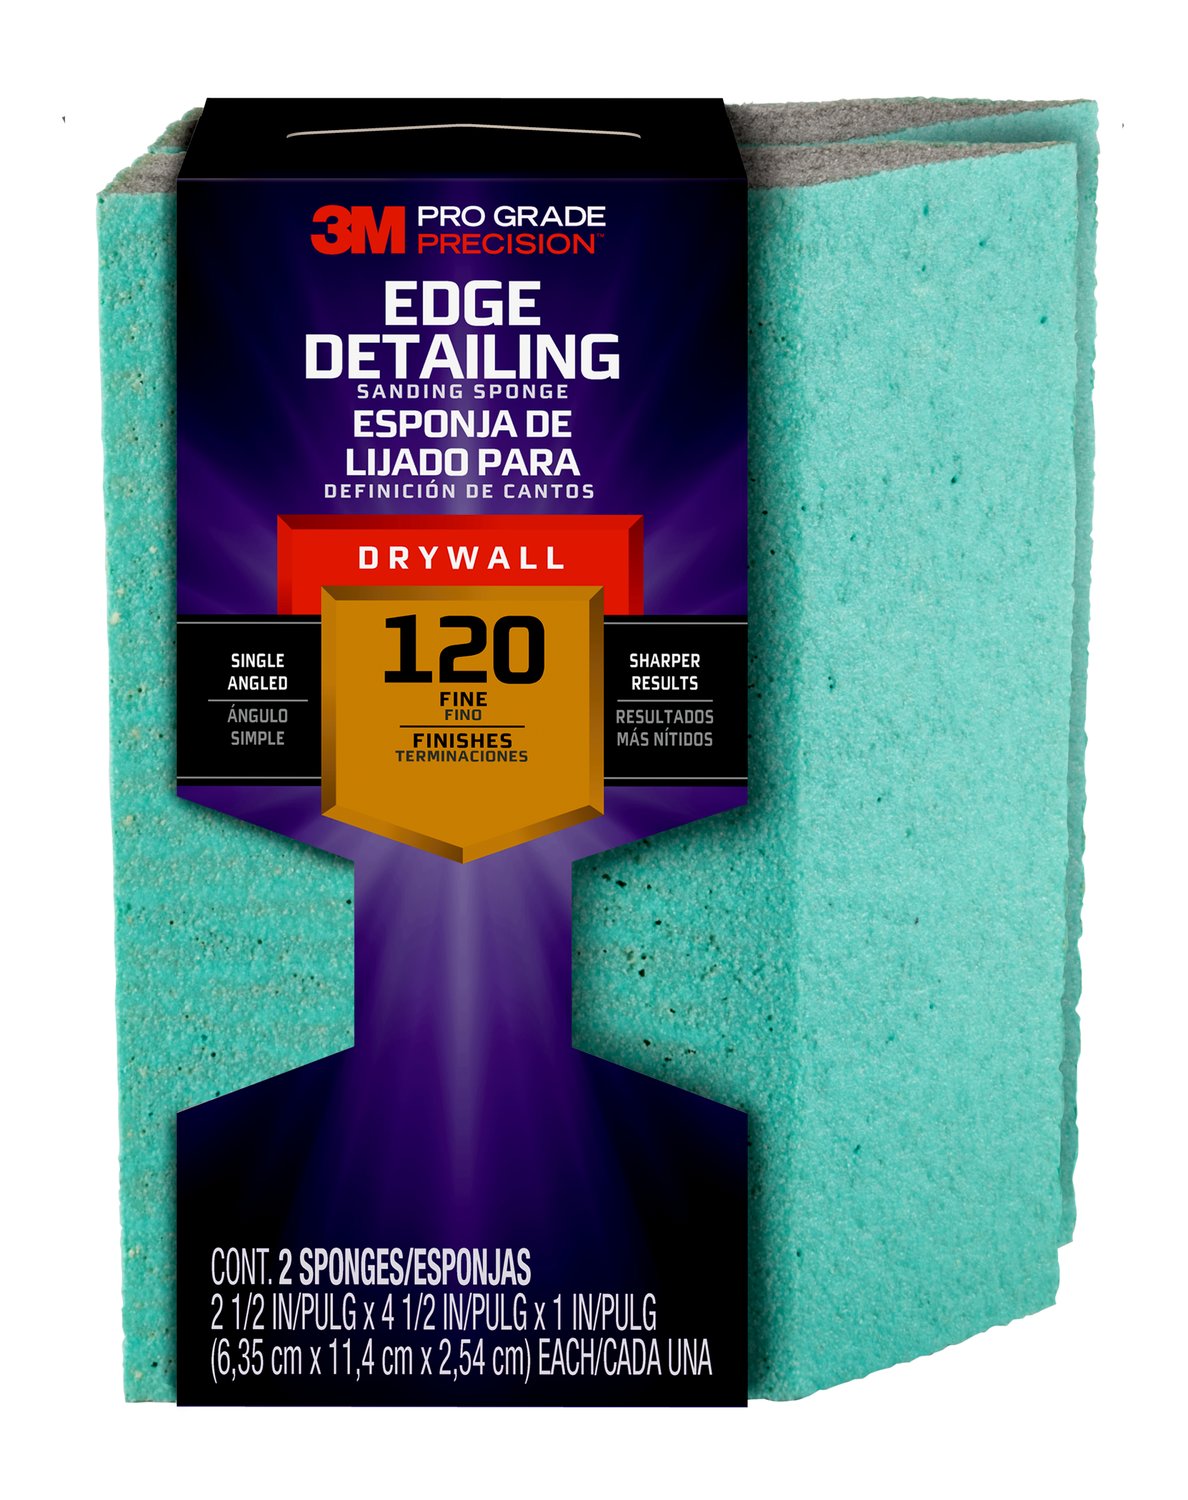 7010417429 - 3M Pro Grade Precision Drywall Edge Detailing Angled Sanding Sponge
Fine grit, 30904FPSA, 2.5 x 4.5 x1 in, 2/each, 6/case